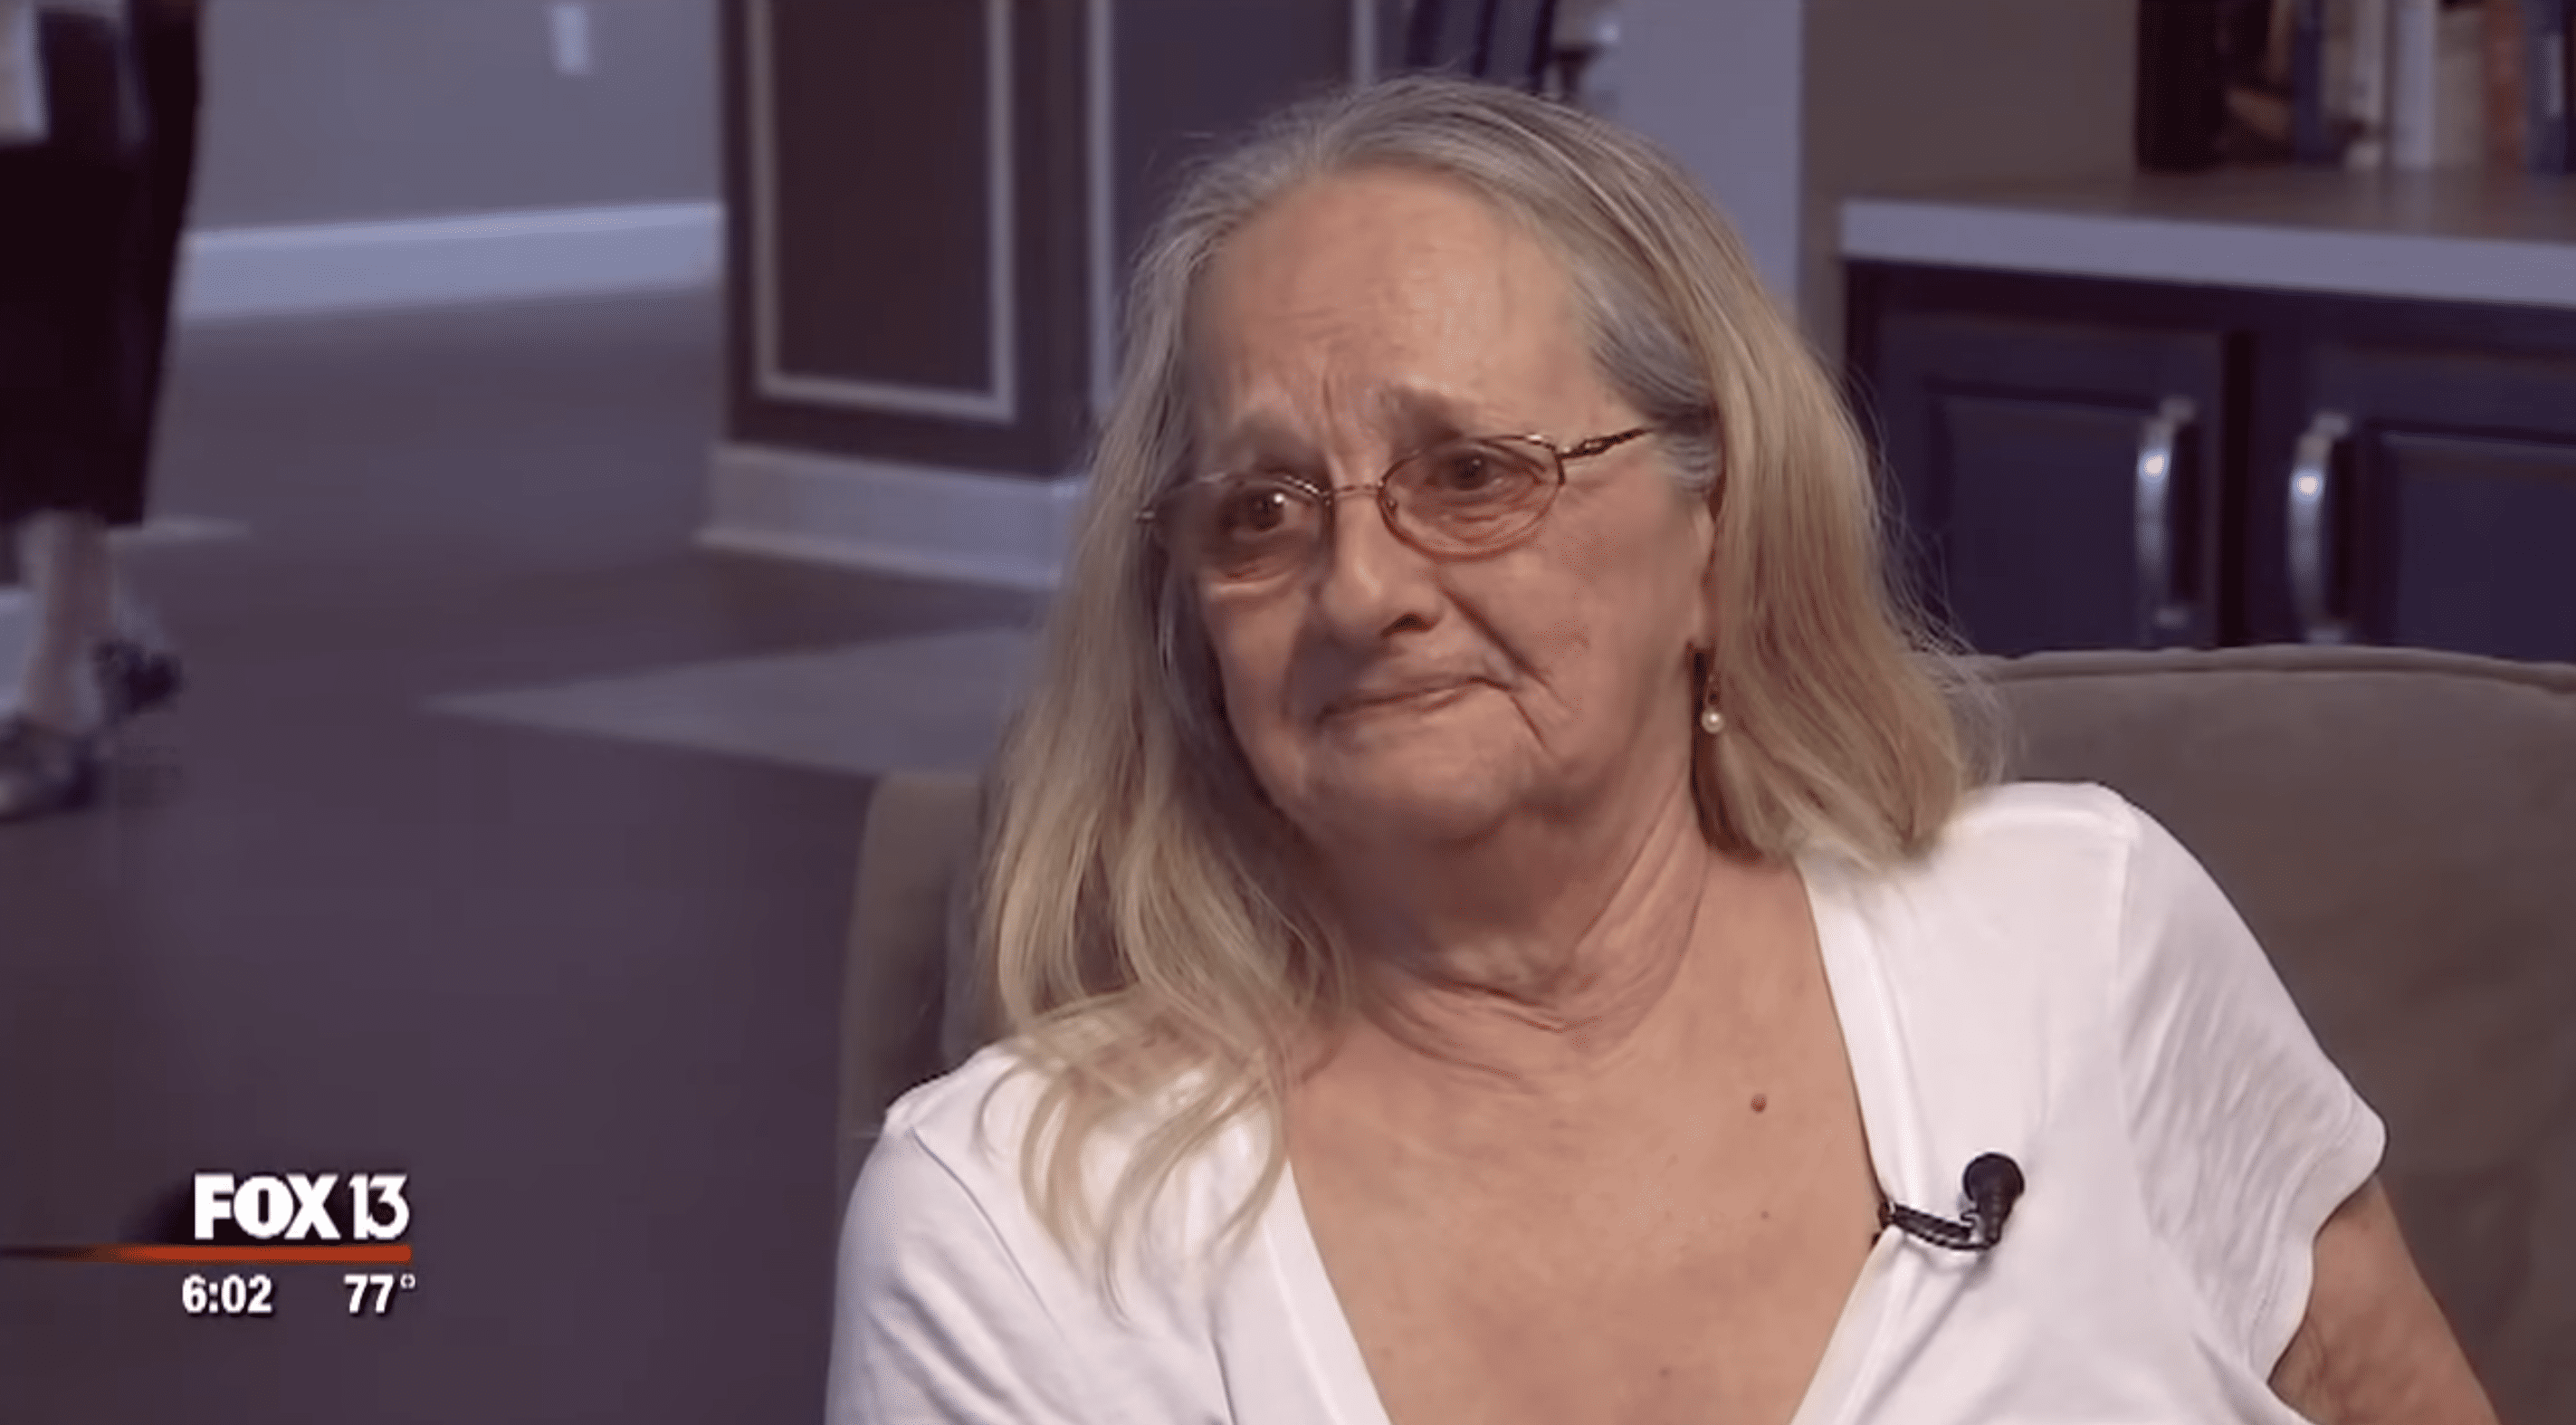 Connie Moultroup teilte mit, dass das DNA-Kit ihr geholfen habe, ihre leibliche Mutter zu finden. | Quelle: Youtube.com/FOX 13 Tampa Bay